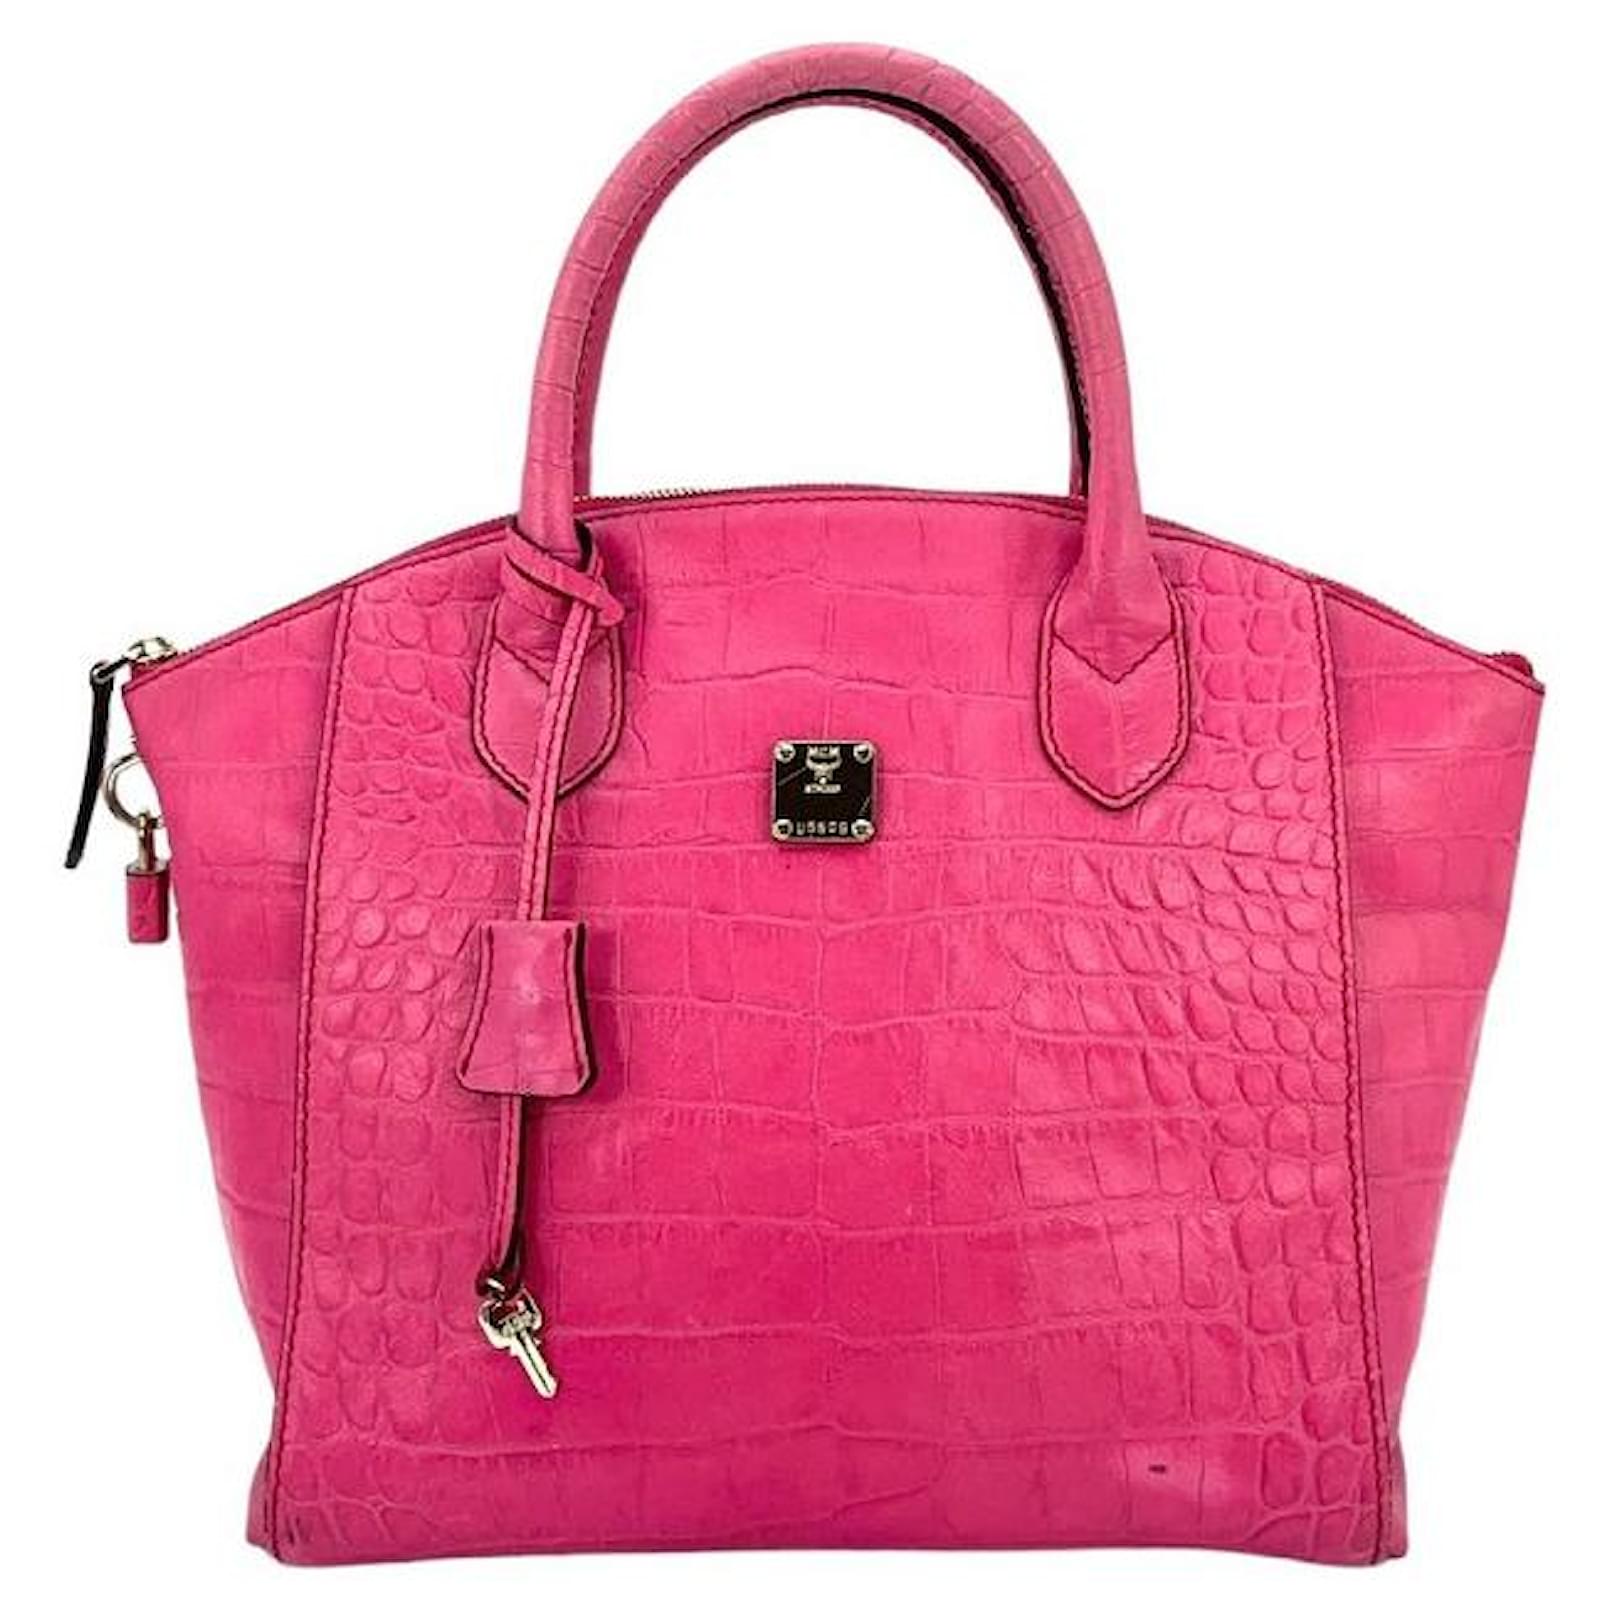 MCM Pink Handbags on Sale